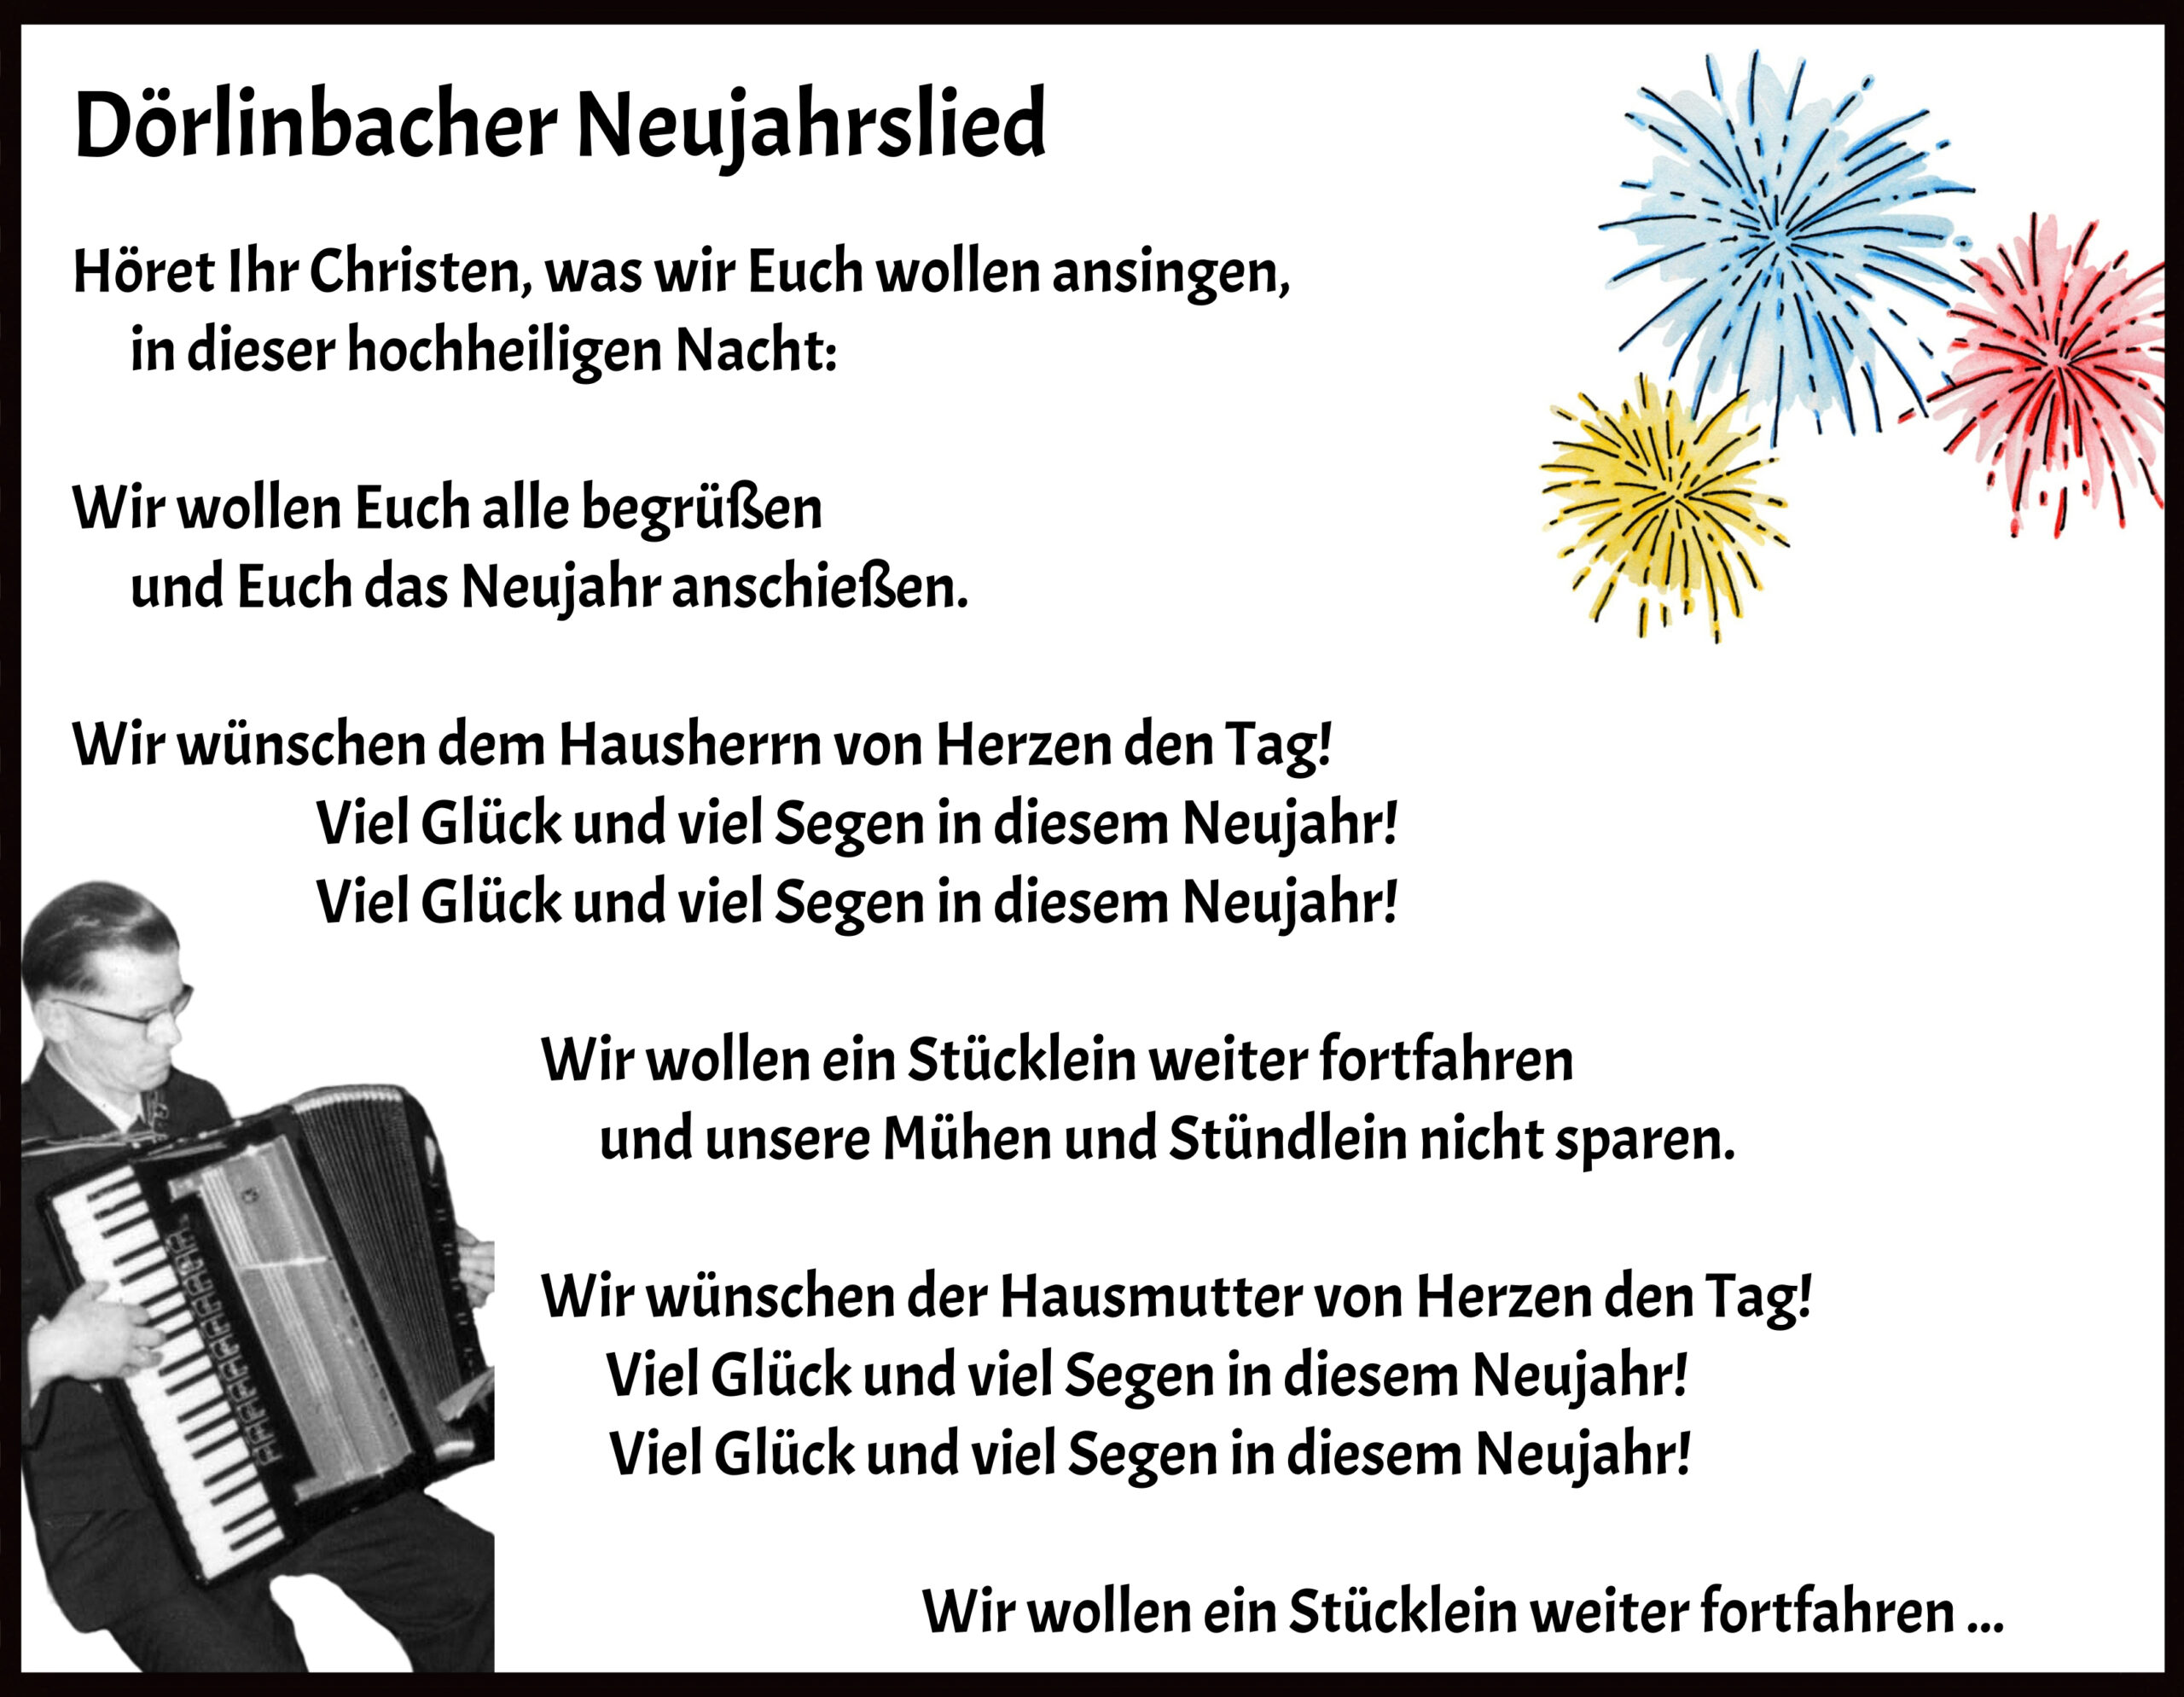 Der Männerchor hat das im Dörlinbacher Brauchtum verankerte Neujahrsansingen wieder aktiviert.